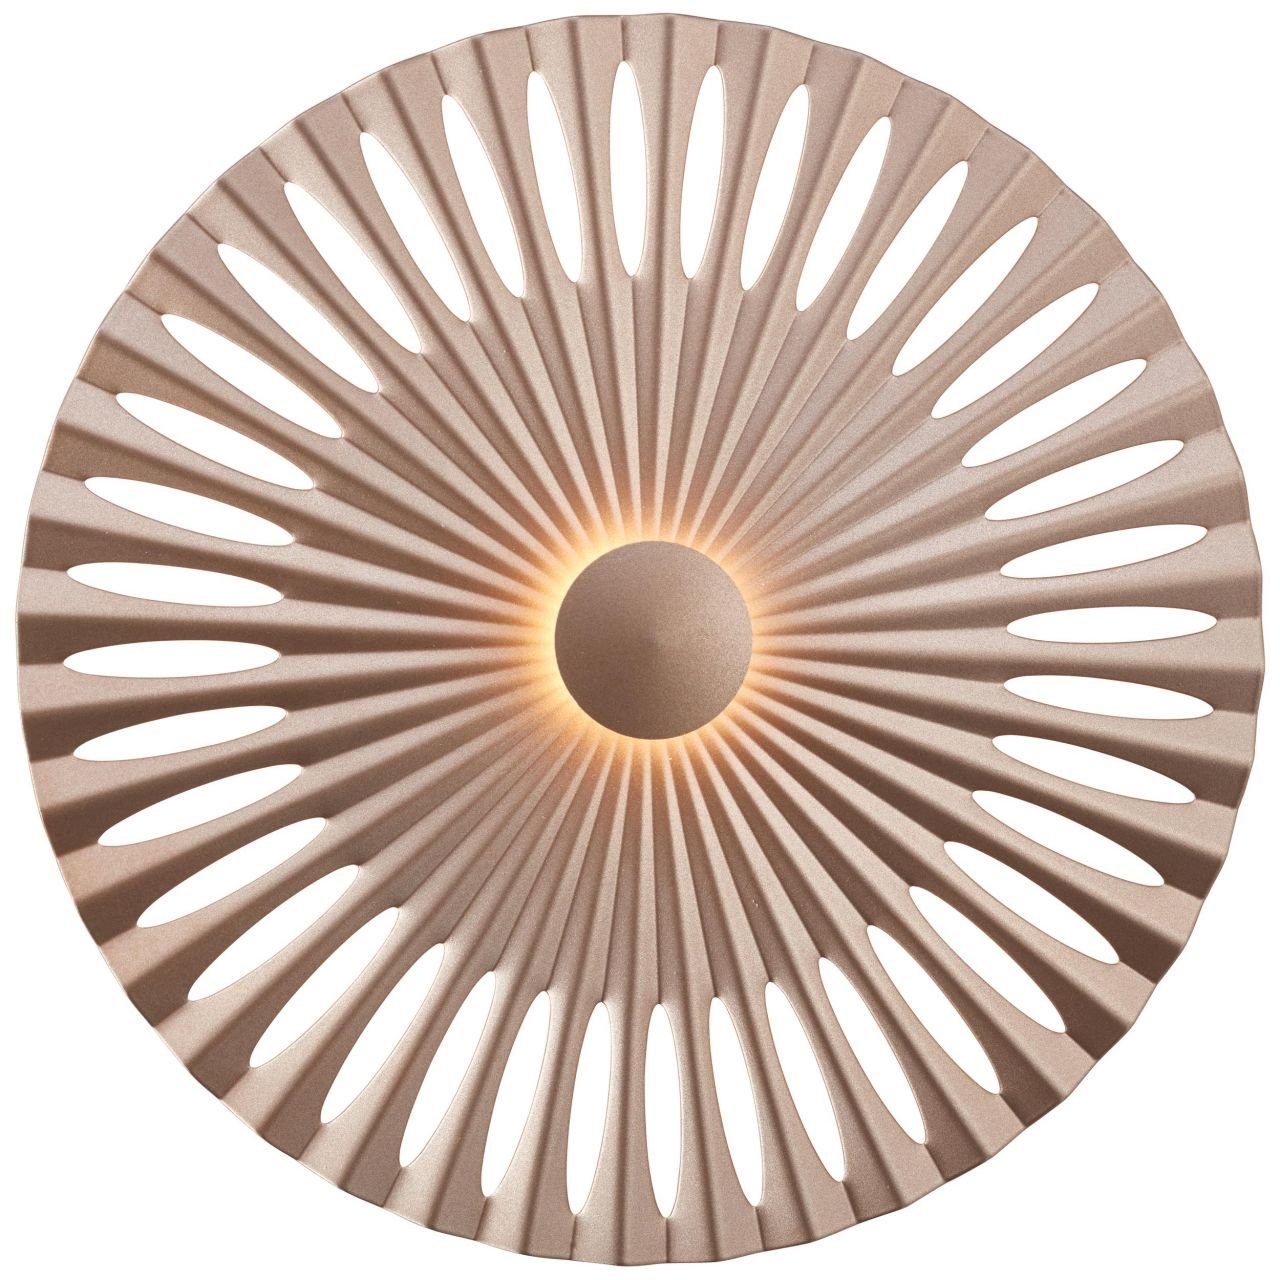 Brilliant Wandleuchte Phinx, Lampe Phinx LED Wandleuchte 32cm braun/Kaffee 1x 12W LED integriert | Wandleuchten